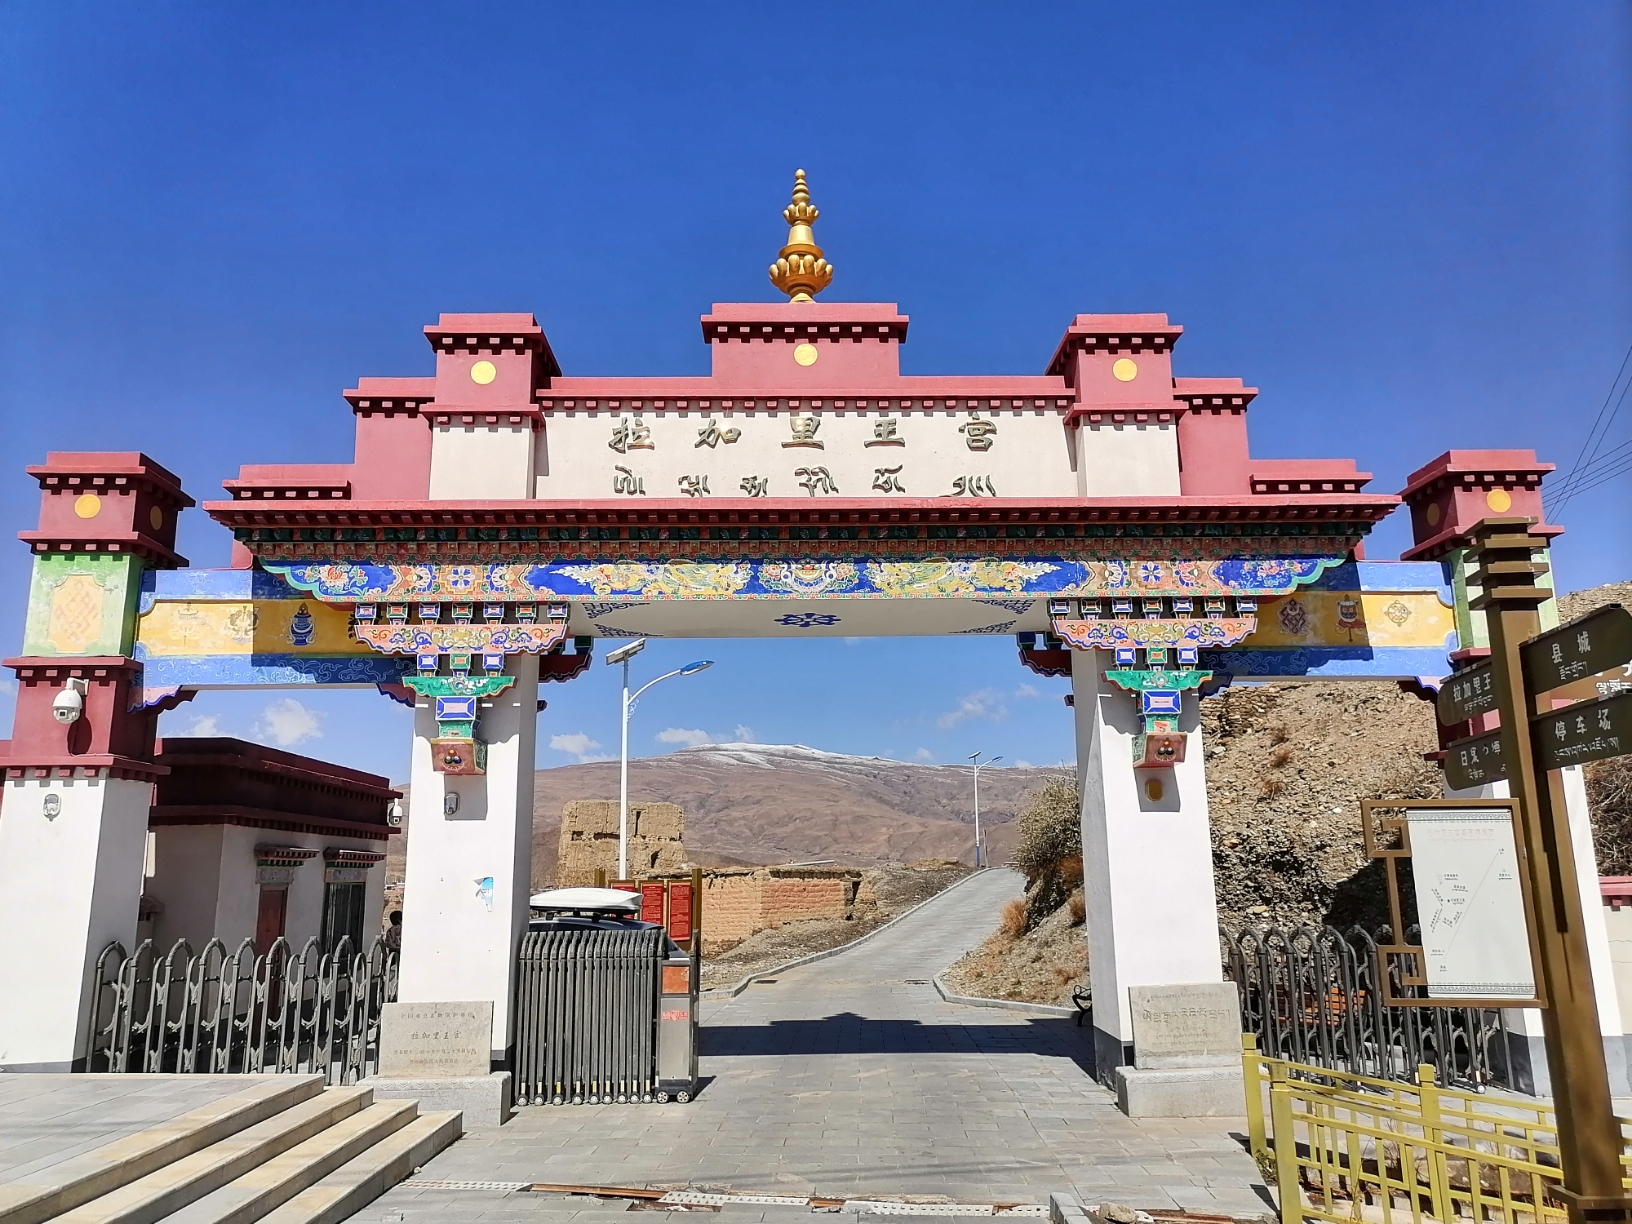 4月20日西藏曲松县拉加里王宫遗址一日喀则扎什伦布寺。沿国道560一路下行到雅鲁藏布江边，再走高速到